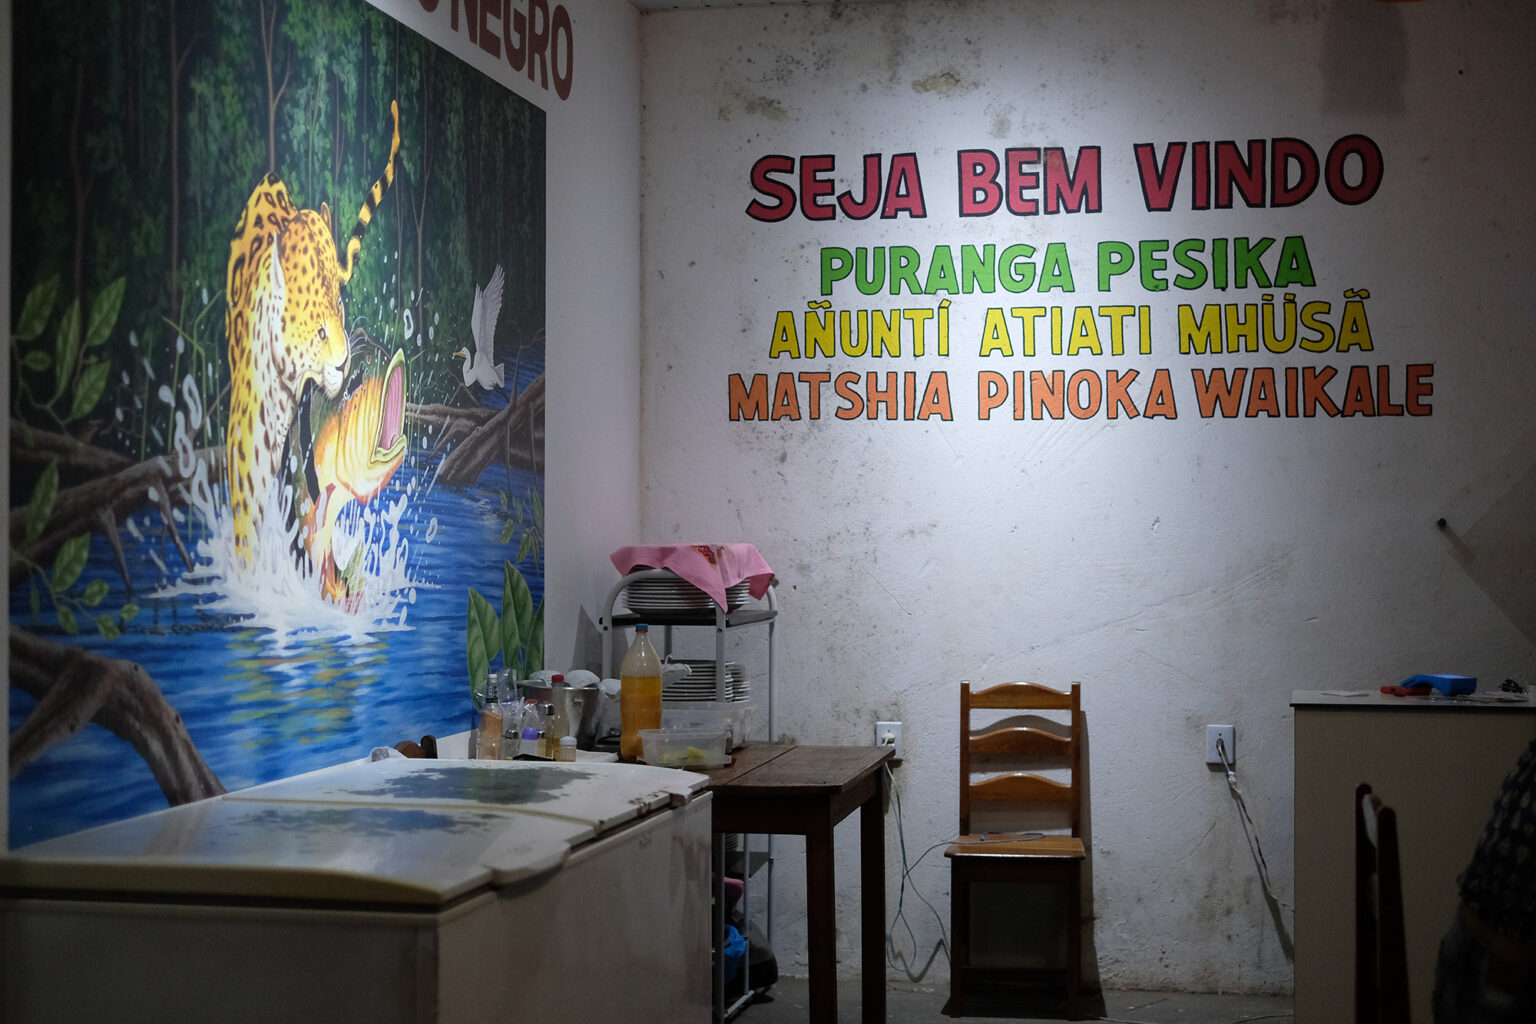 Em São Gabriel da Cachoeira as boas-vindas são em quatro línguas: desafio de adequar o currículo a etnias diferentes (Foto: Alberto César Araújo/Amazônia Real - 2019)